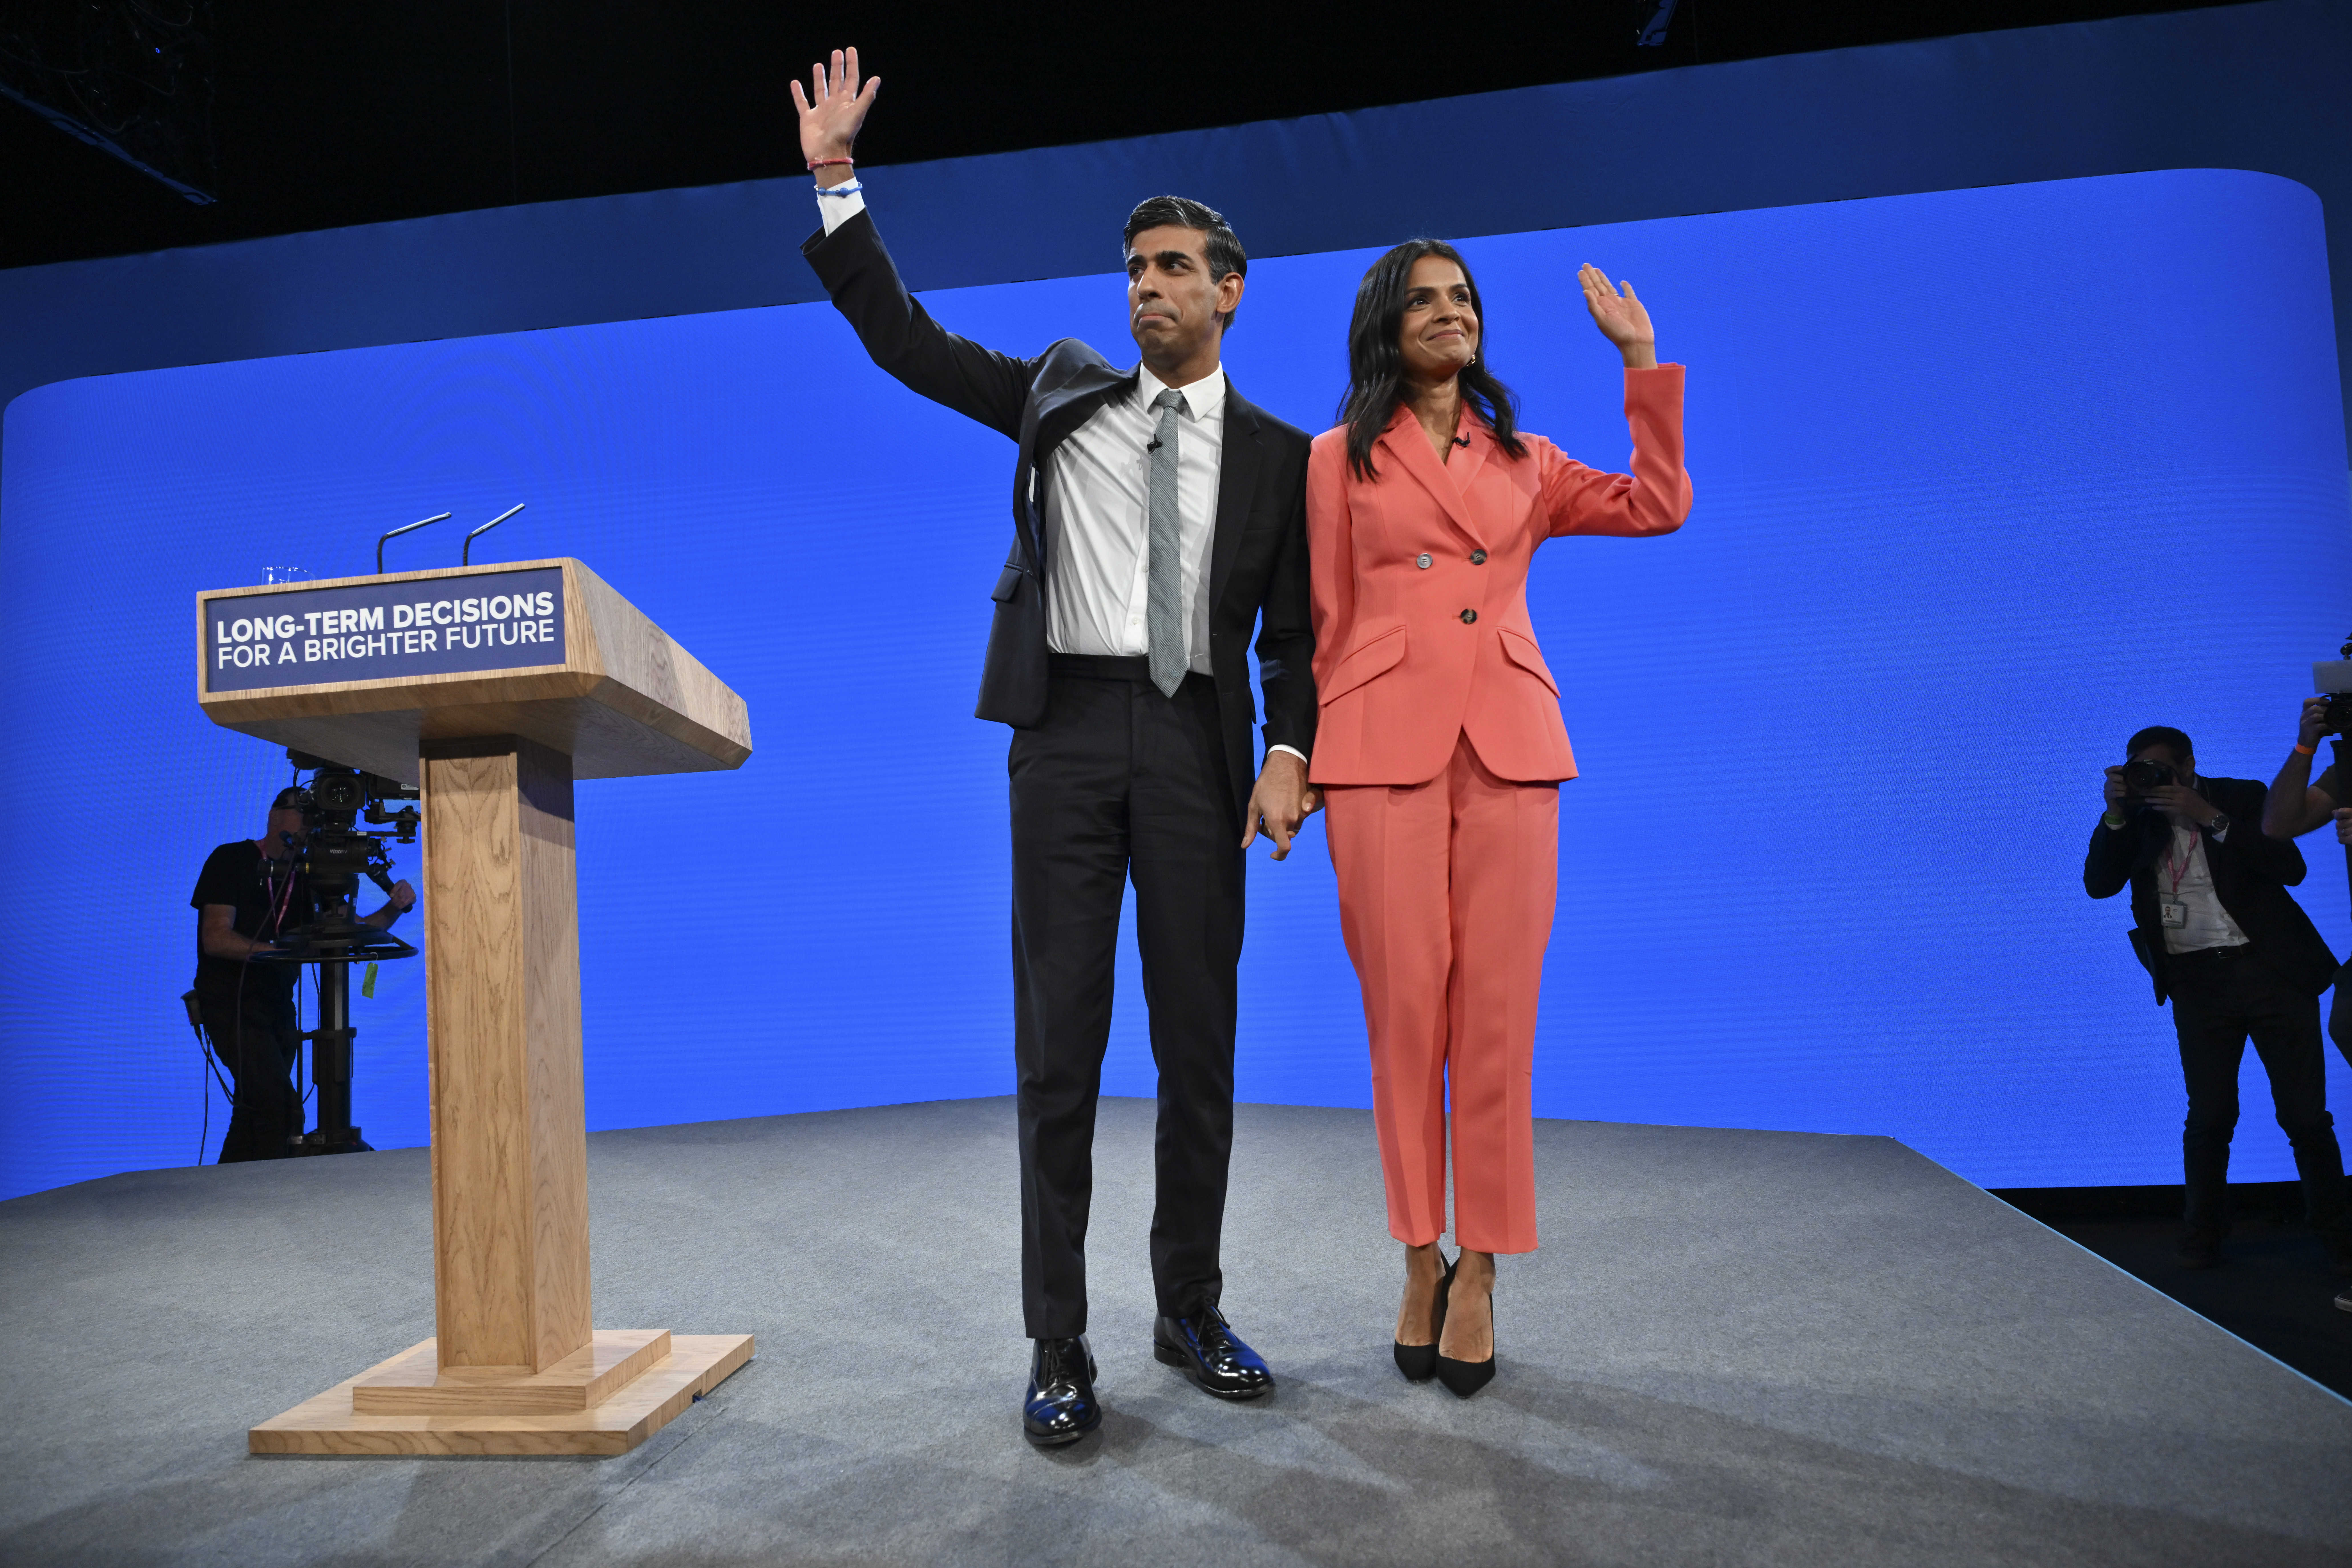 Der Premierminister und seine Frau Akshata Murty auf der Bühne des Parteitags der Konservativen Partei